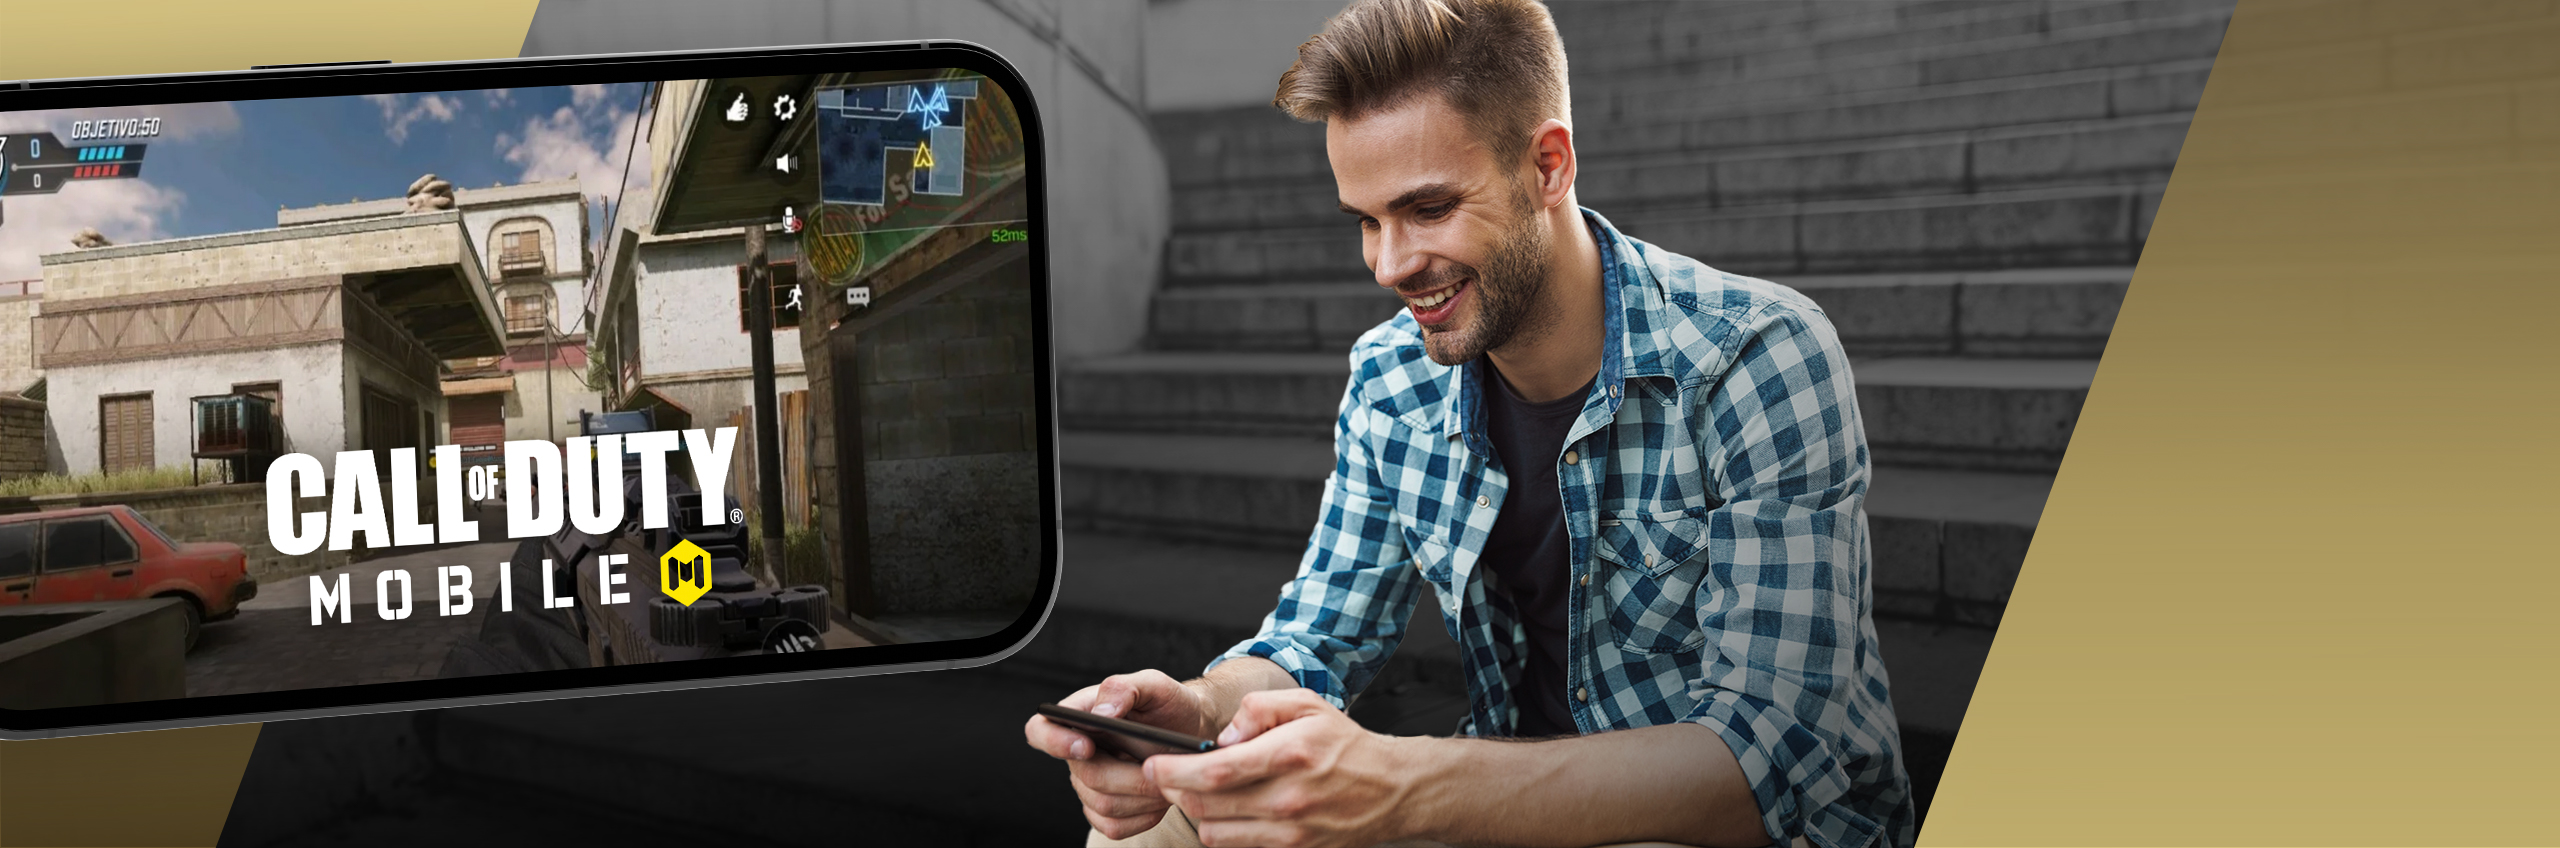 Un joven juega a Call of Duty: Mobile en el móvil, con una pantalla del teléfono superpuesta a la imagen. 